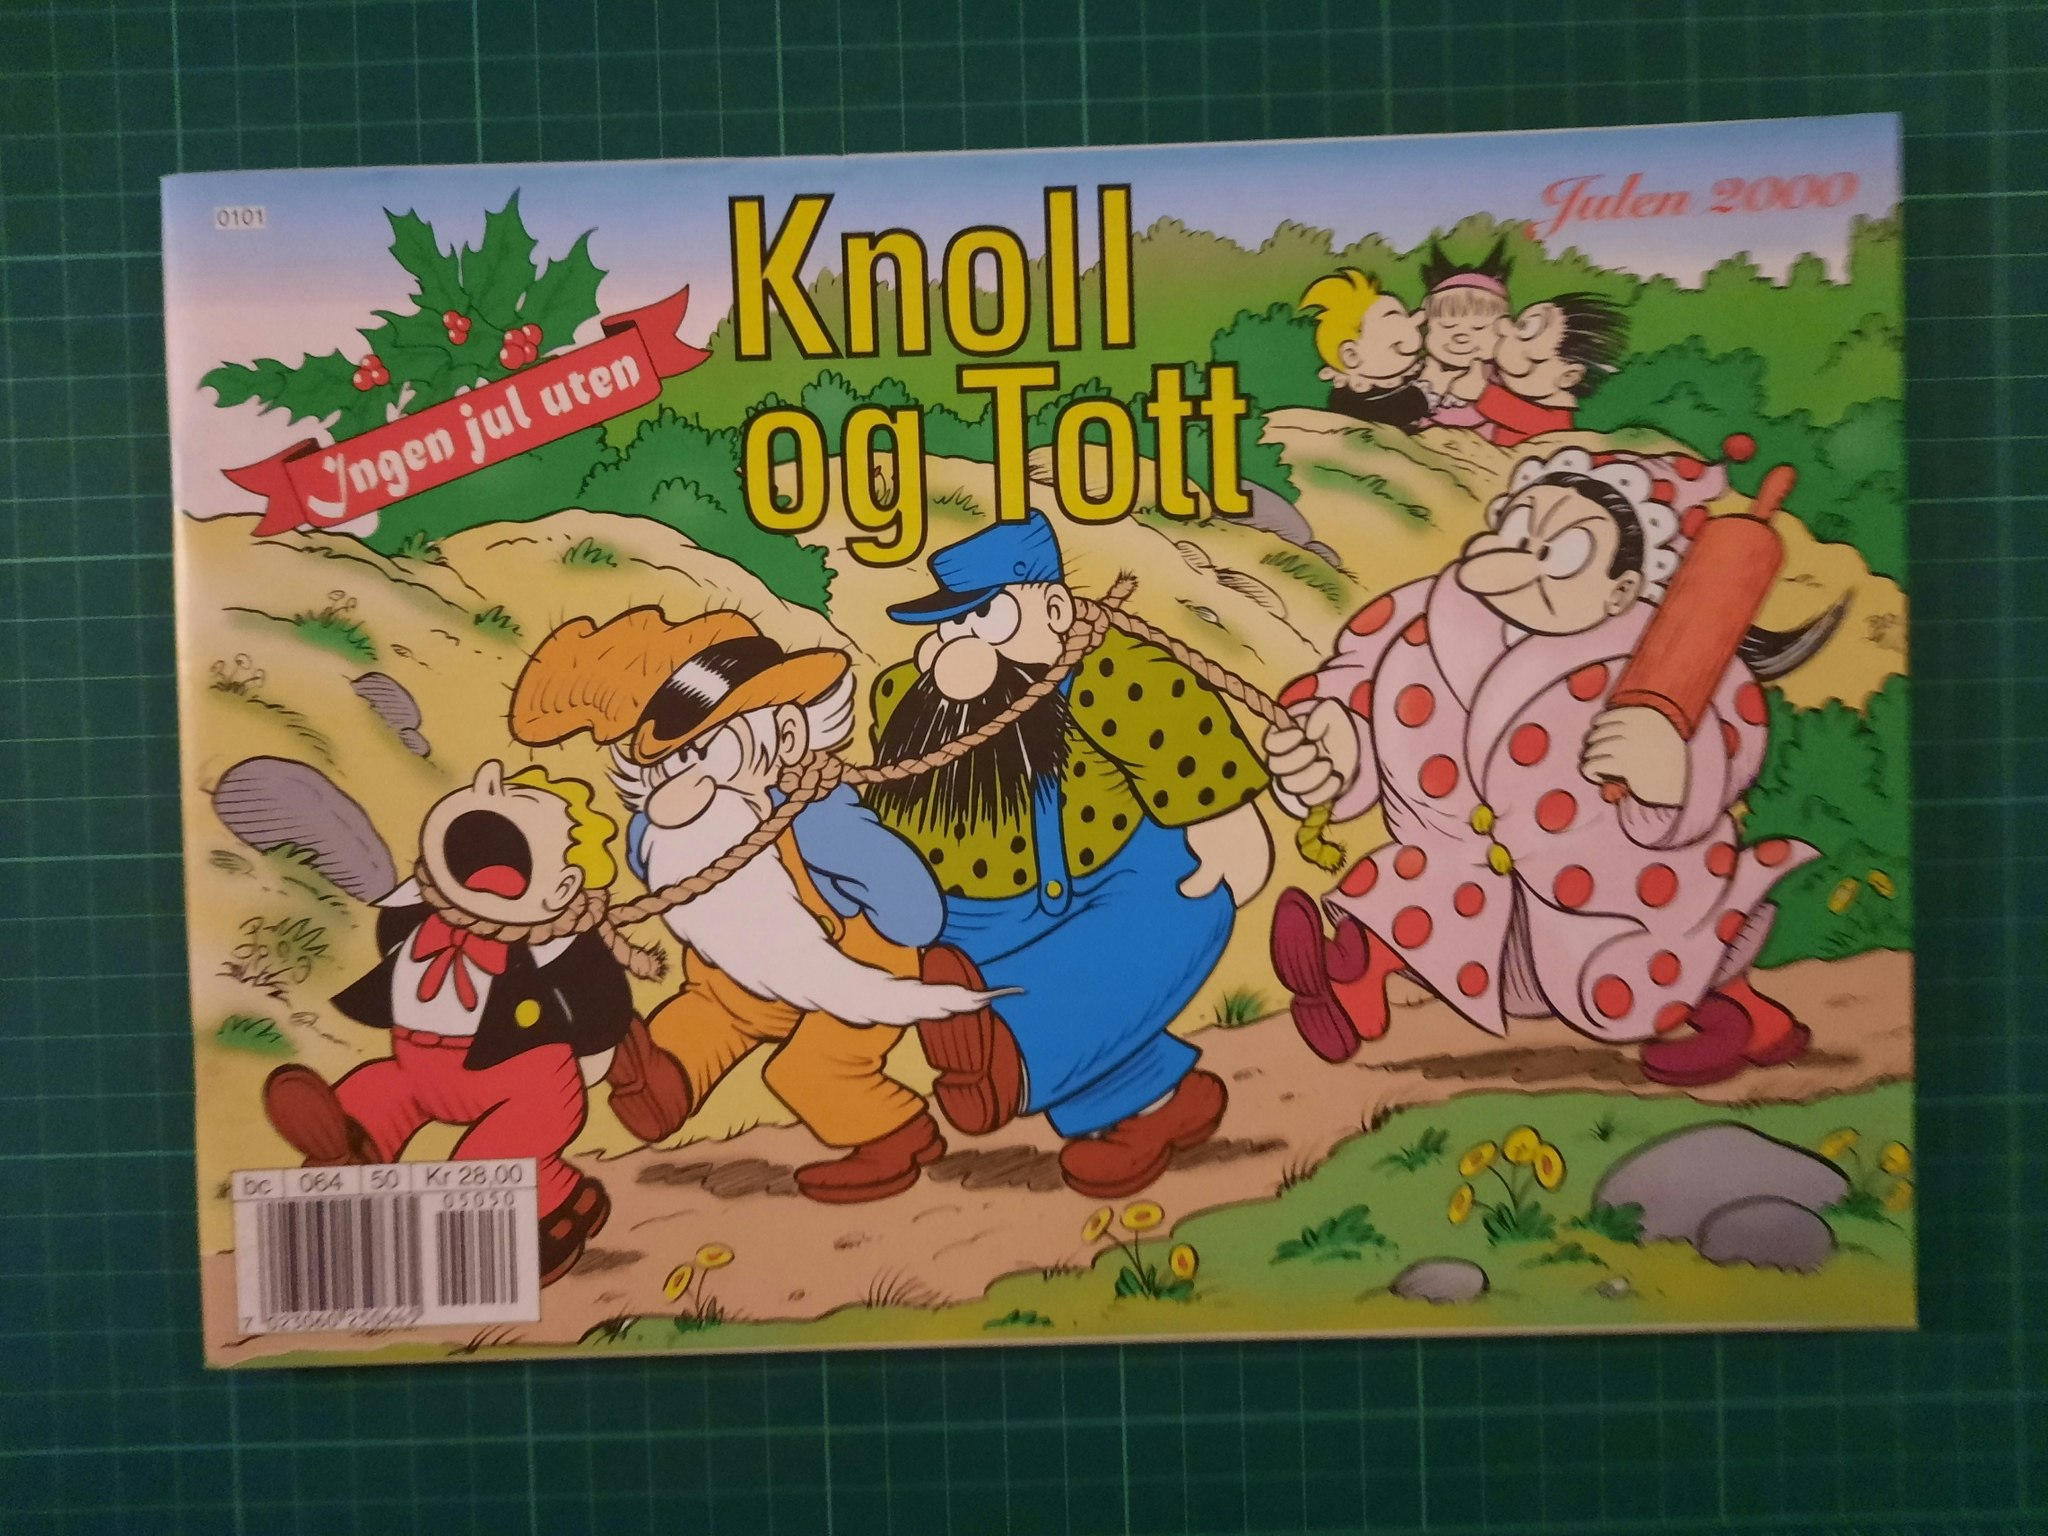 Knoll og Tott 2000